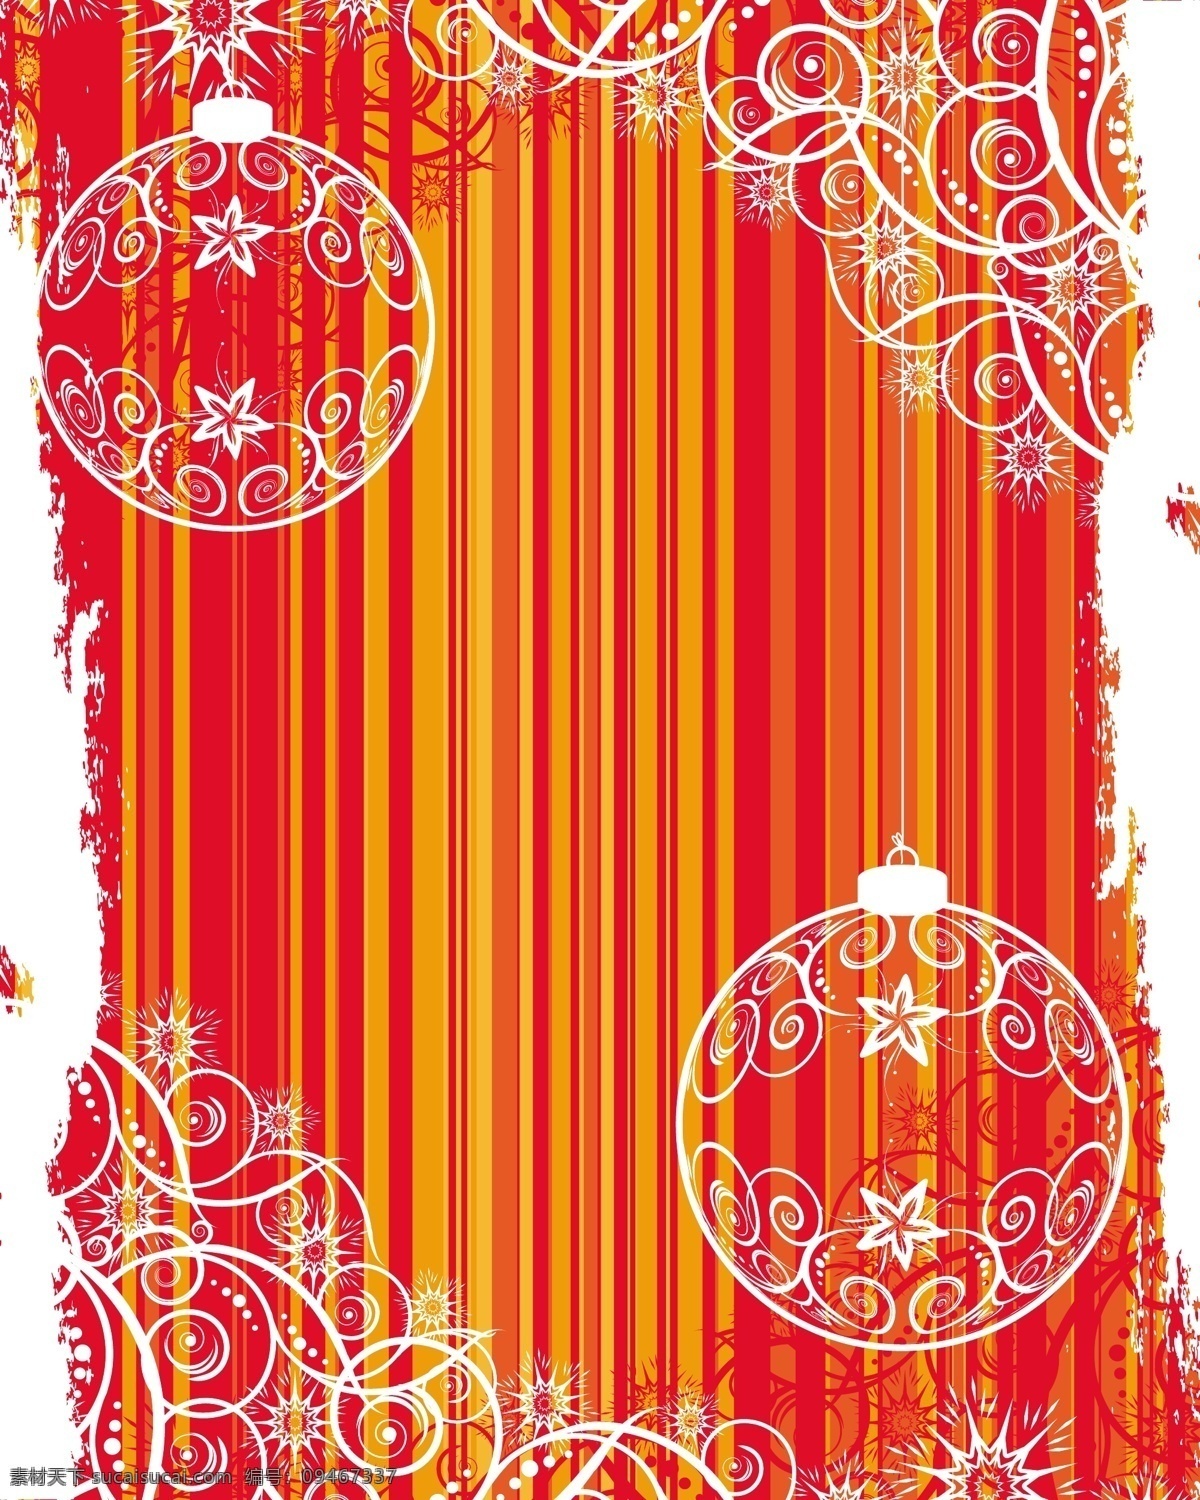 透明 圣诞 挂 球 矢量 材料 红 模式 球形 圣诞节 雪 圣诞球挂 挂球 新的一年 矢量图 其他节日